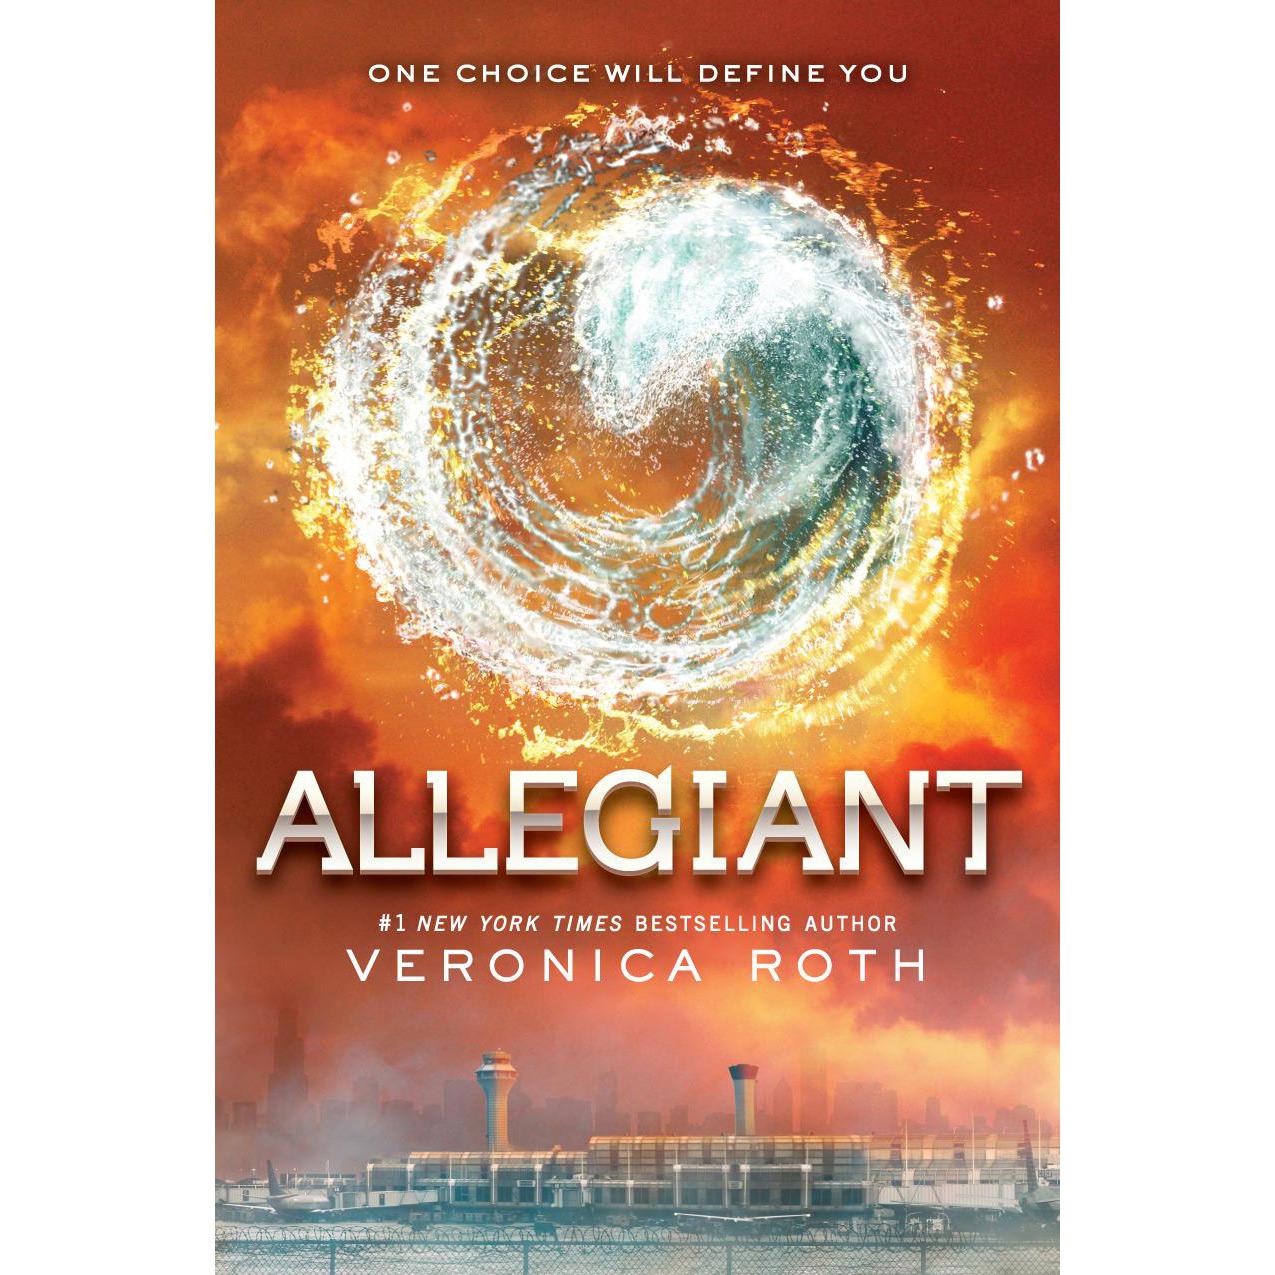 Livro - Allegiant Divergent Series 3: One Choice Will Define You é bom? Vale a pena?